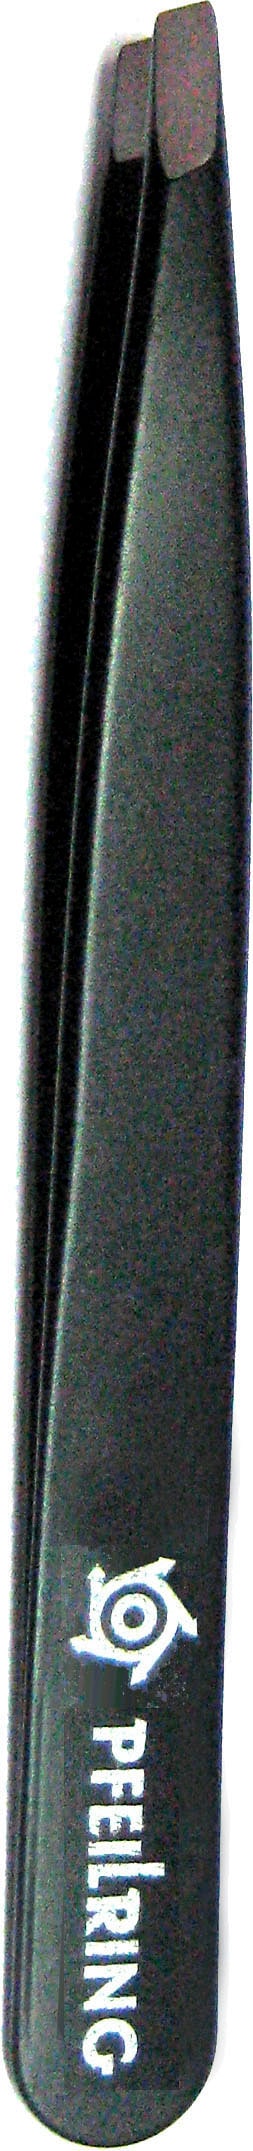 Pinzette, 9,7cm, rostfrei schwarz